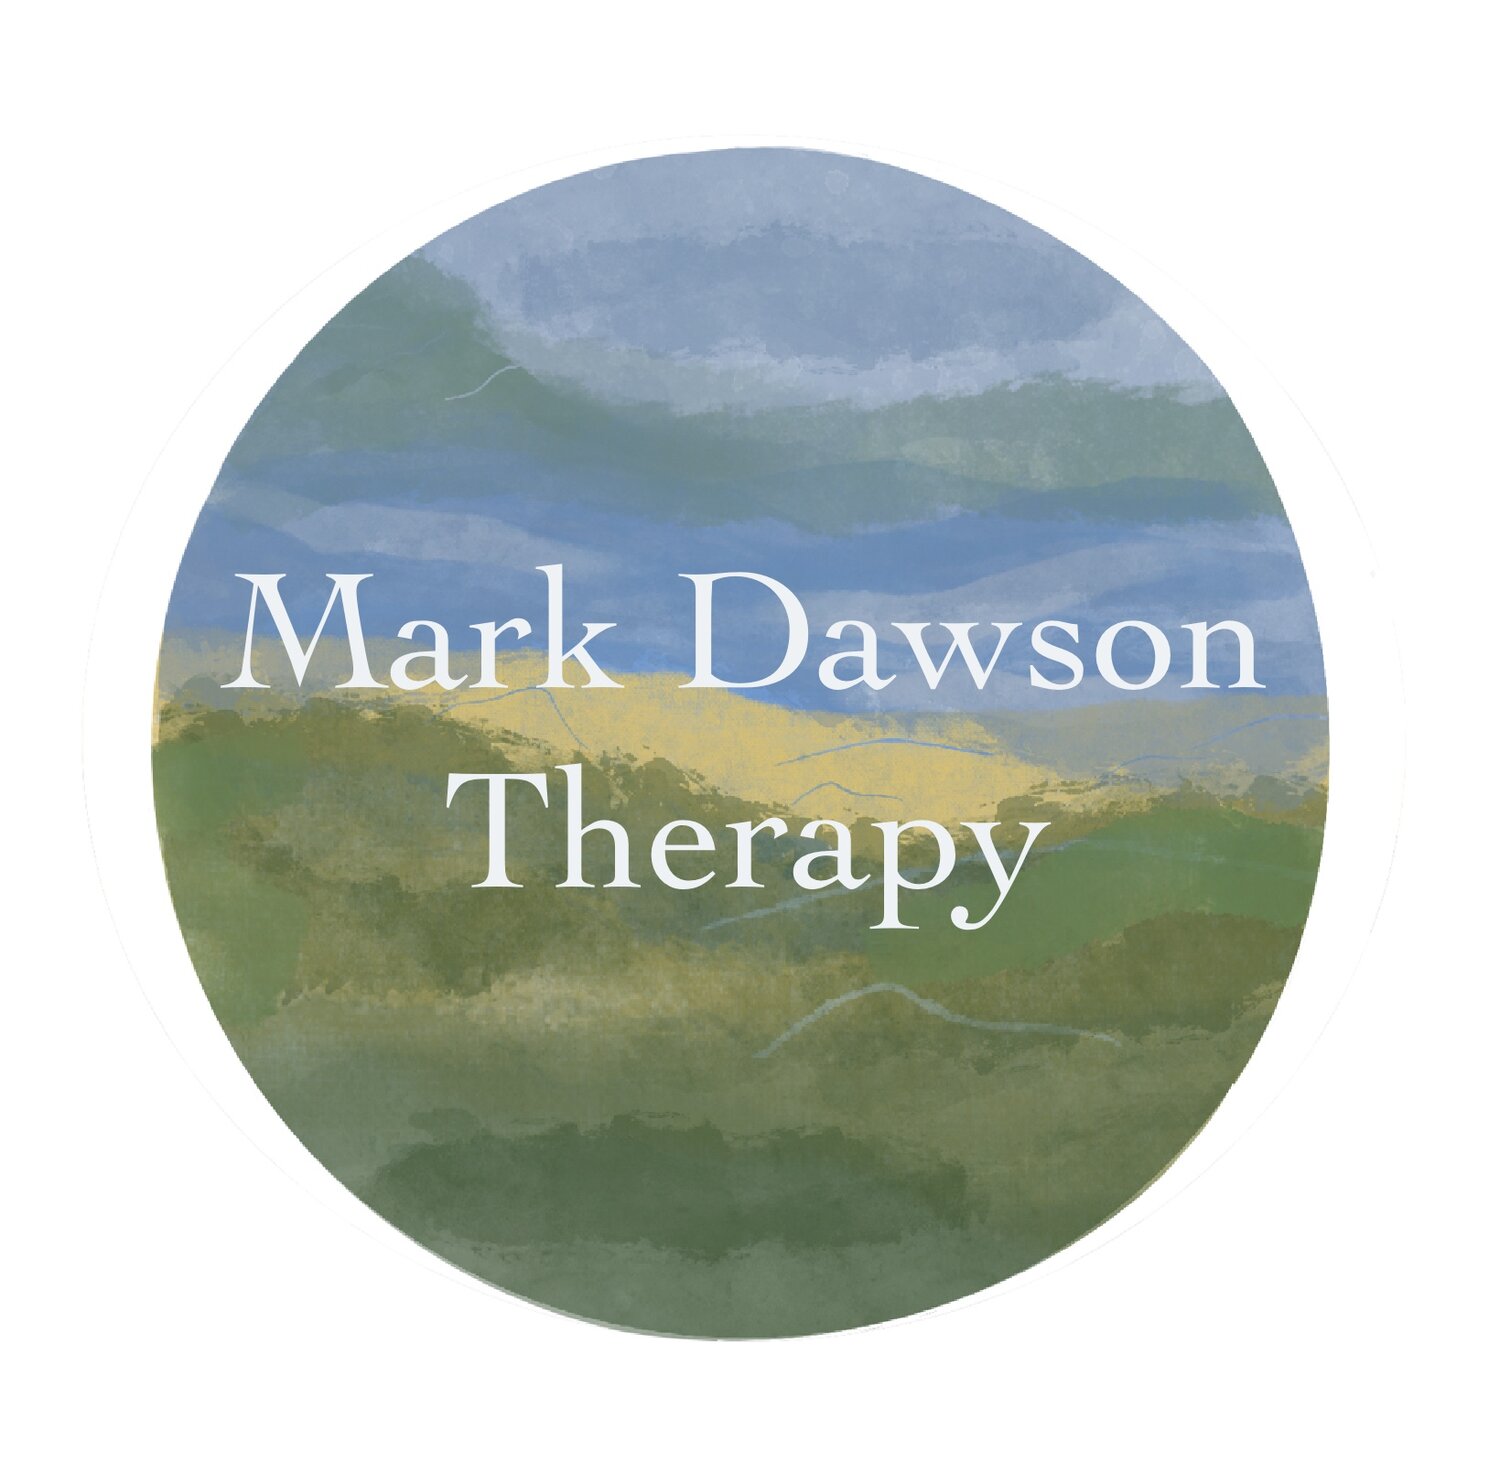 Mark Dawson Therapy